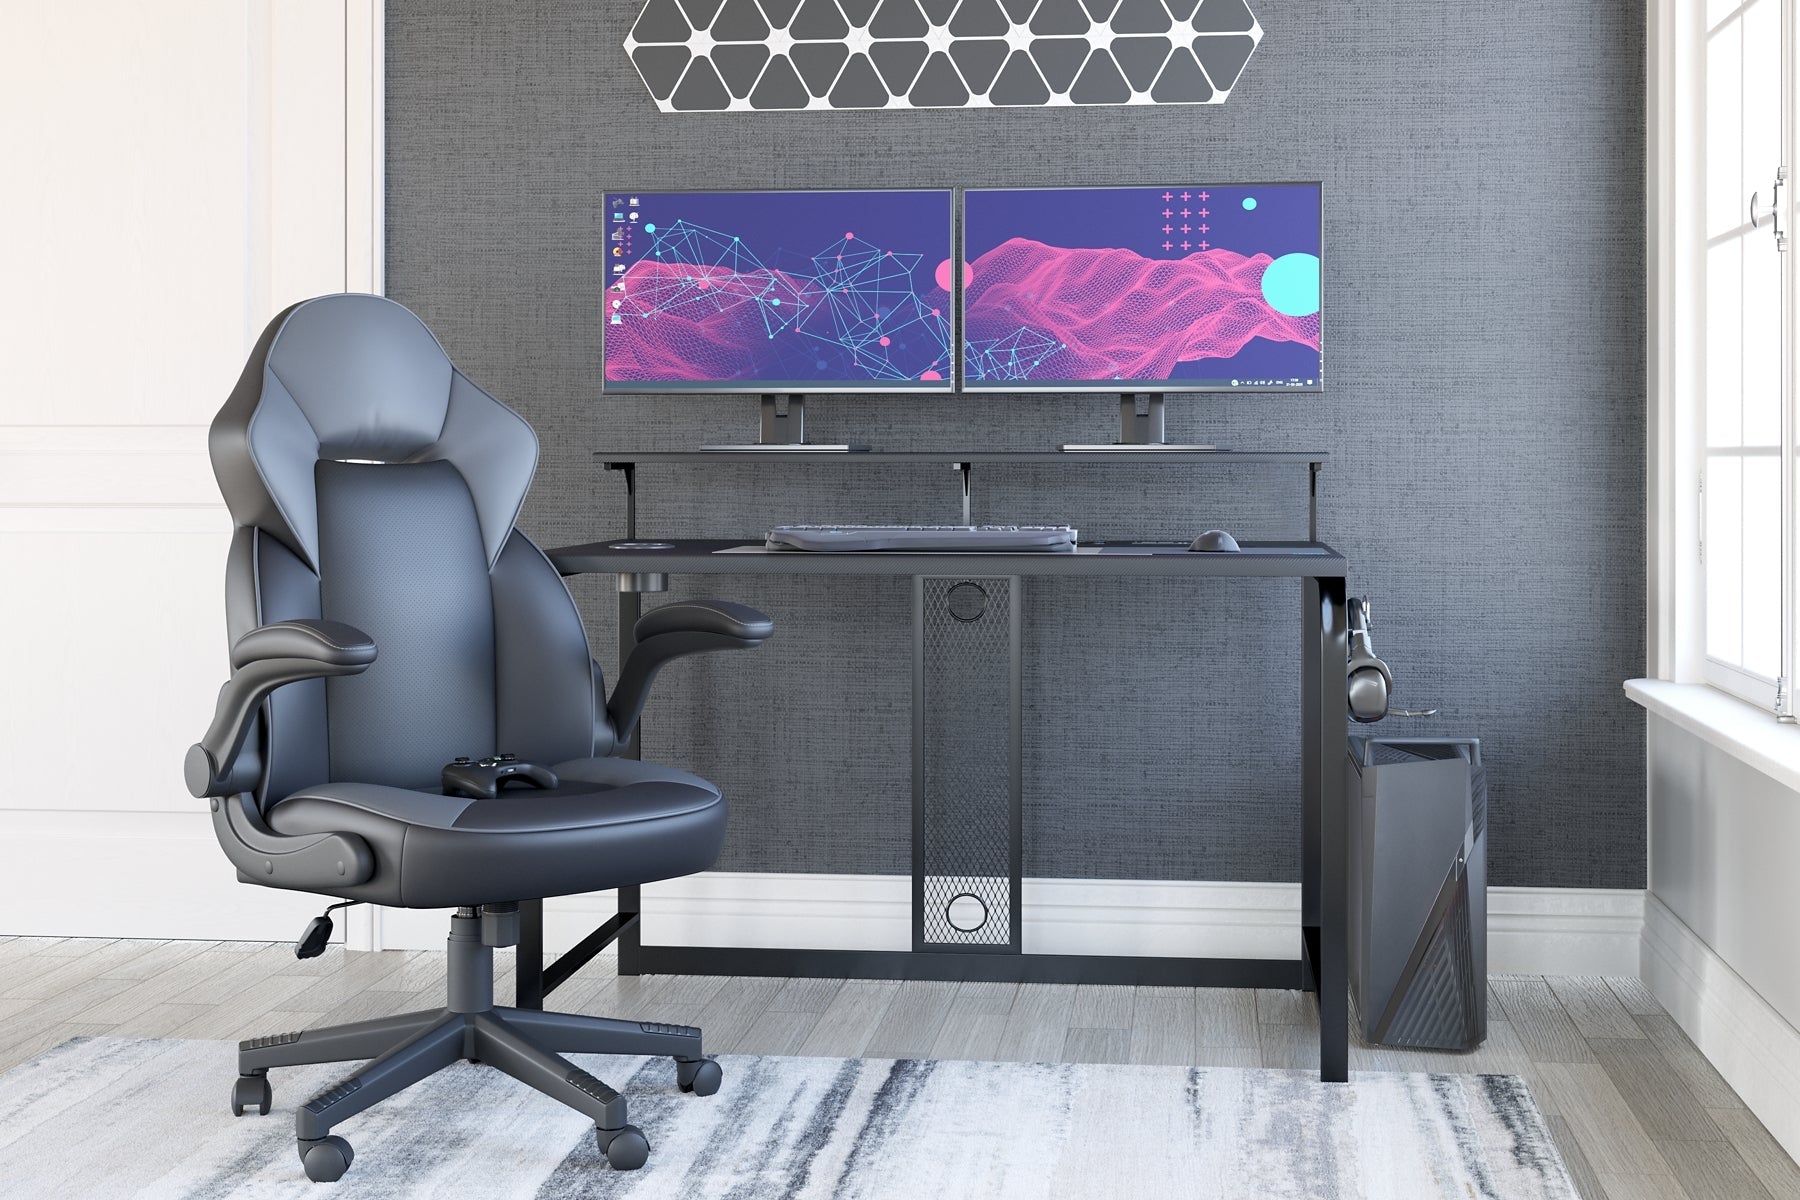 Lynxtyn Home Office Desk at Cloud 9 Mattress & Furniture furniture, home furnishing, home decor